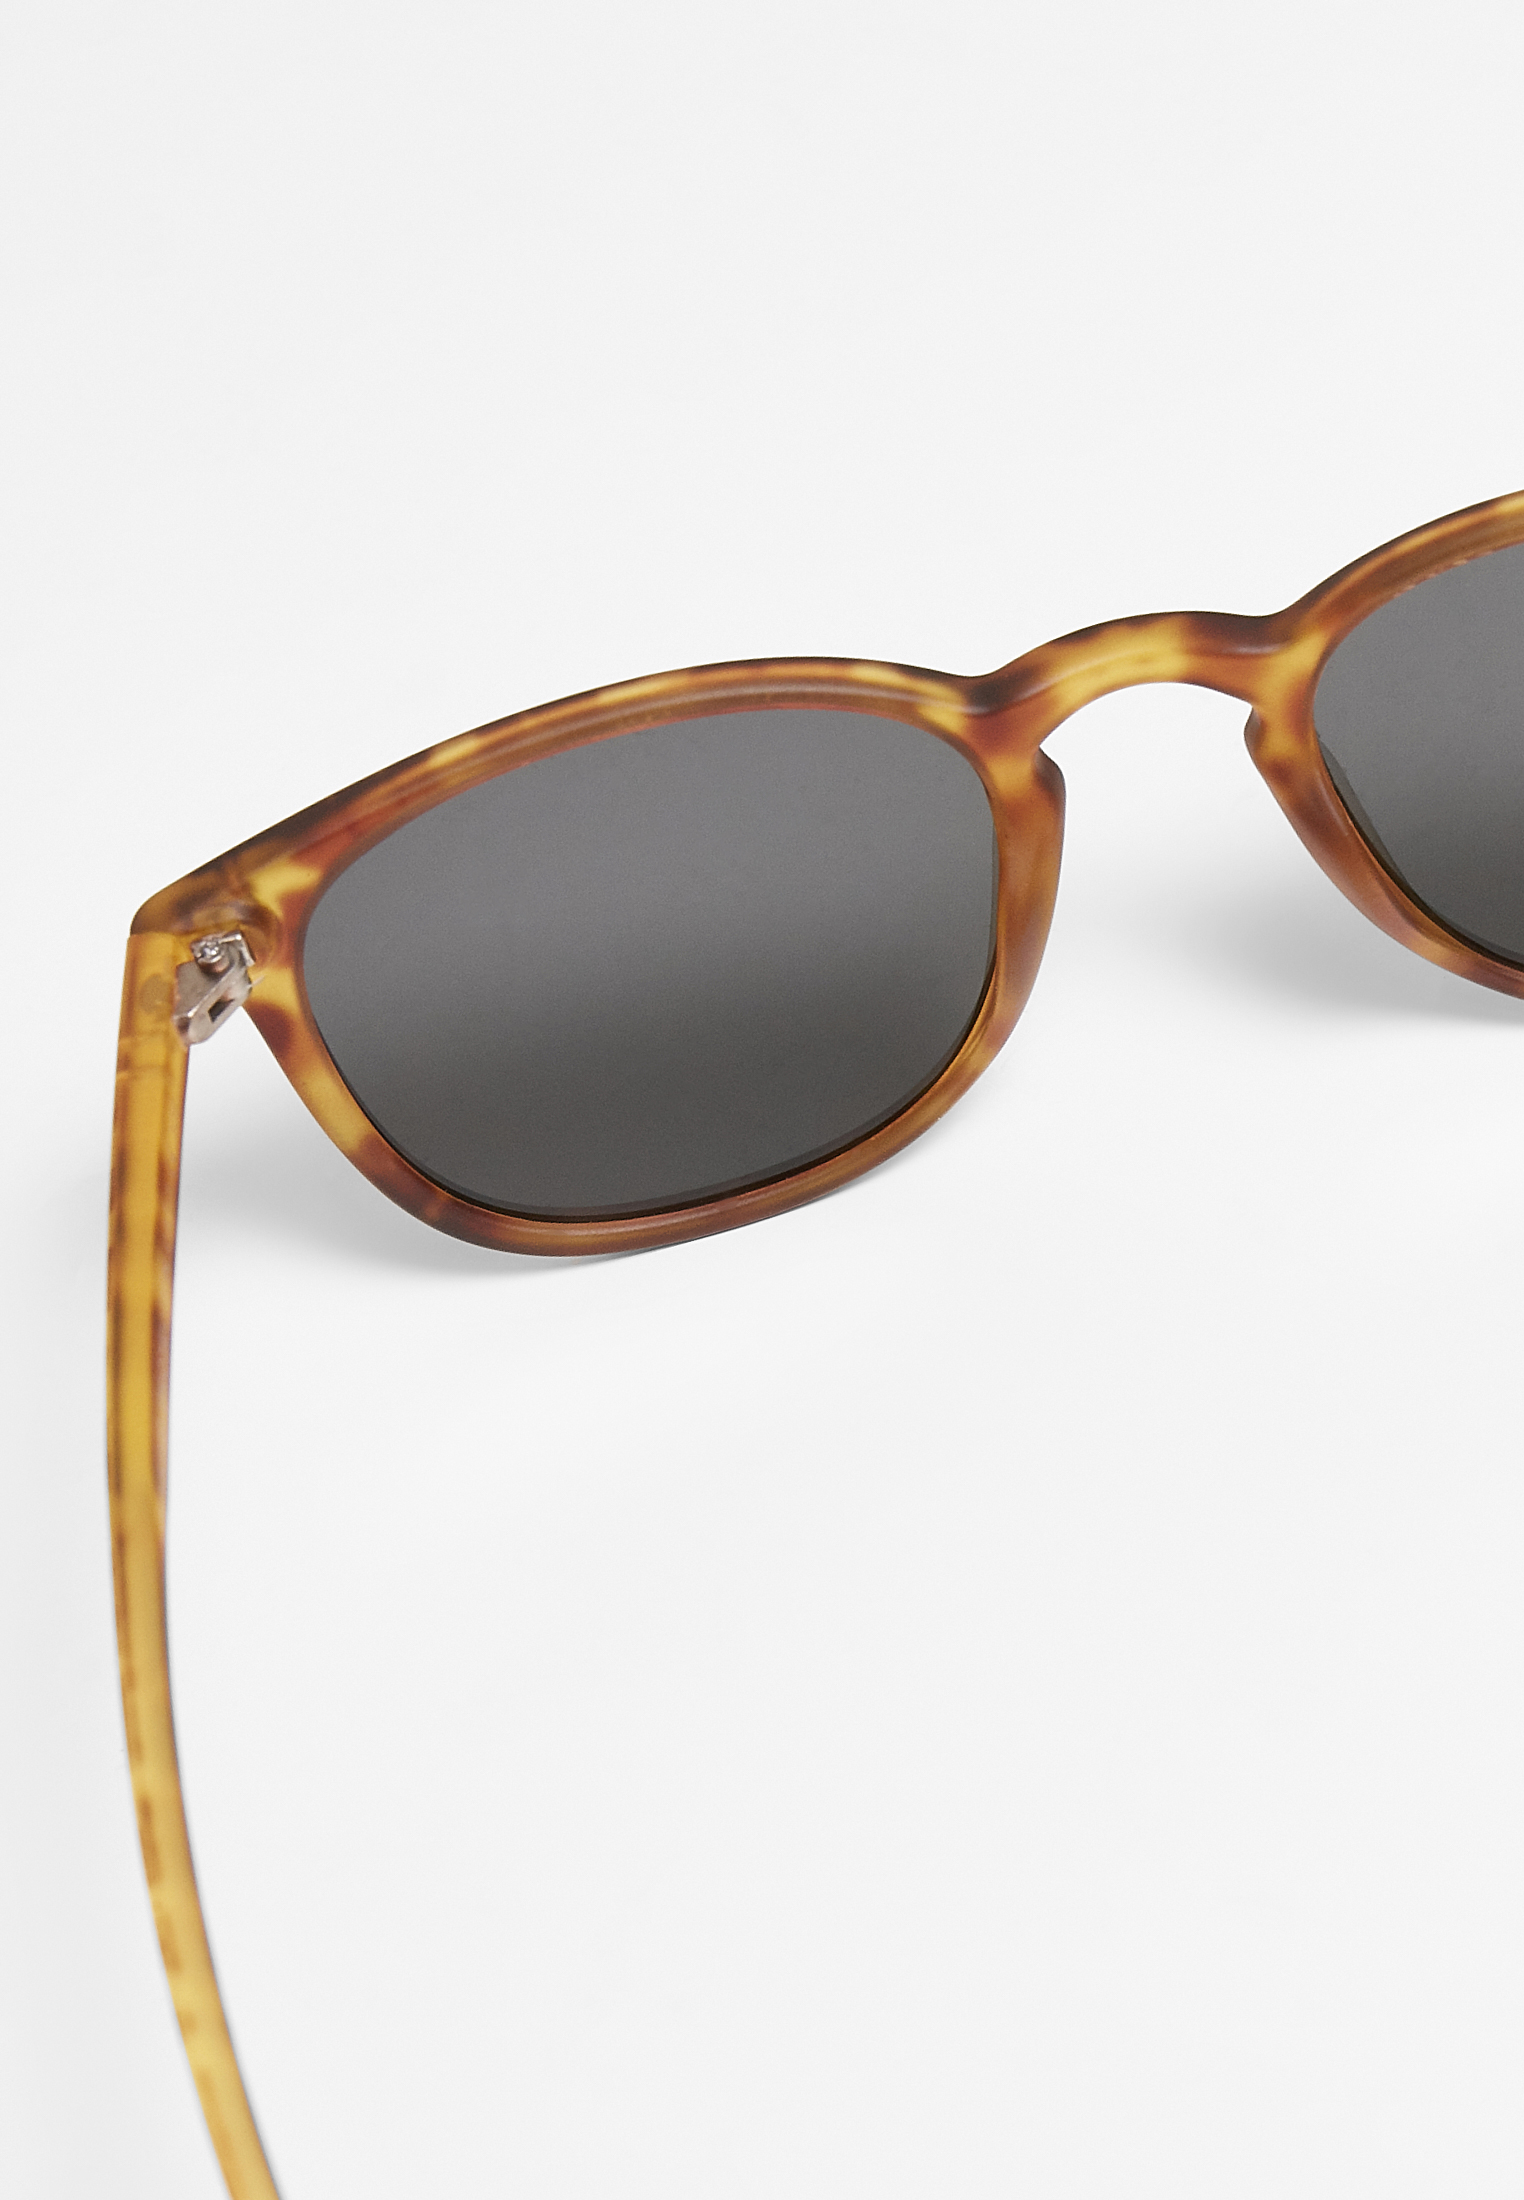 Sonnenbrillen Sunglasses Arthur UC in Farbe brown leo/grey